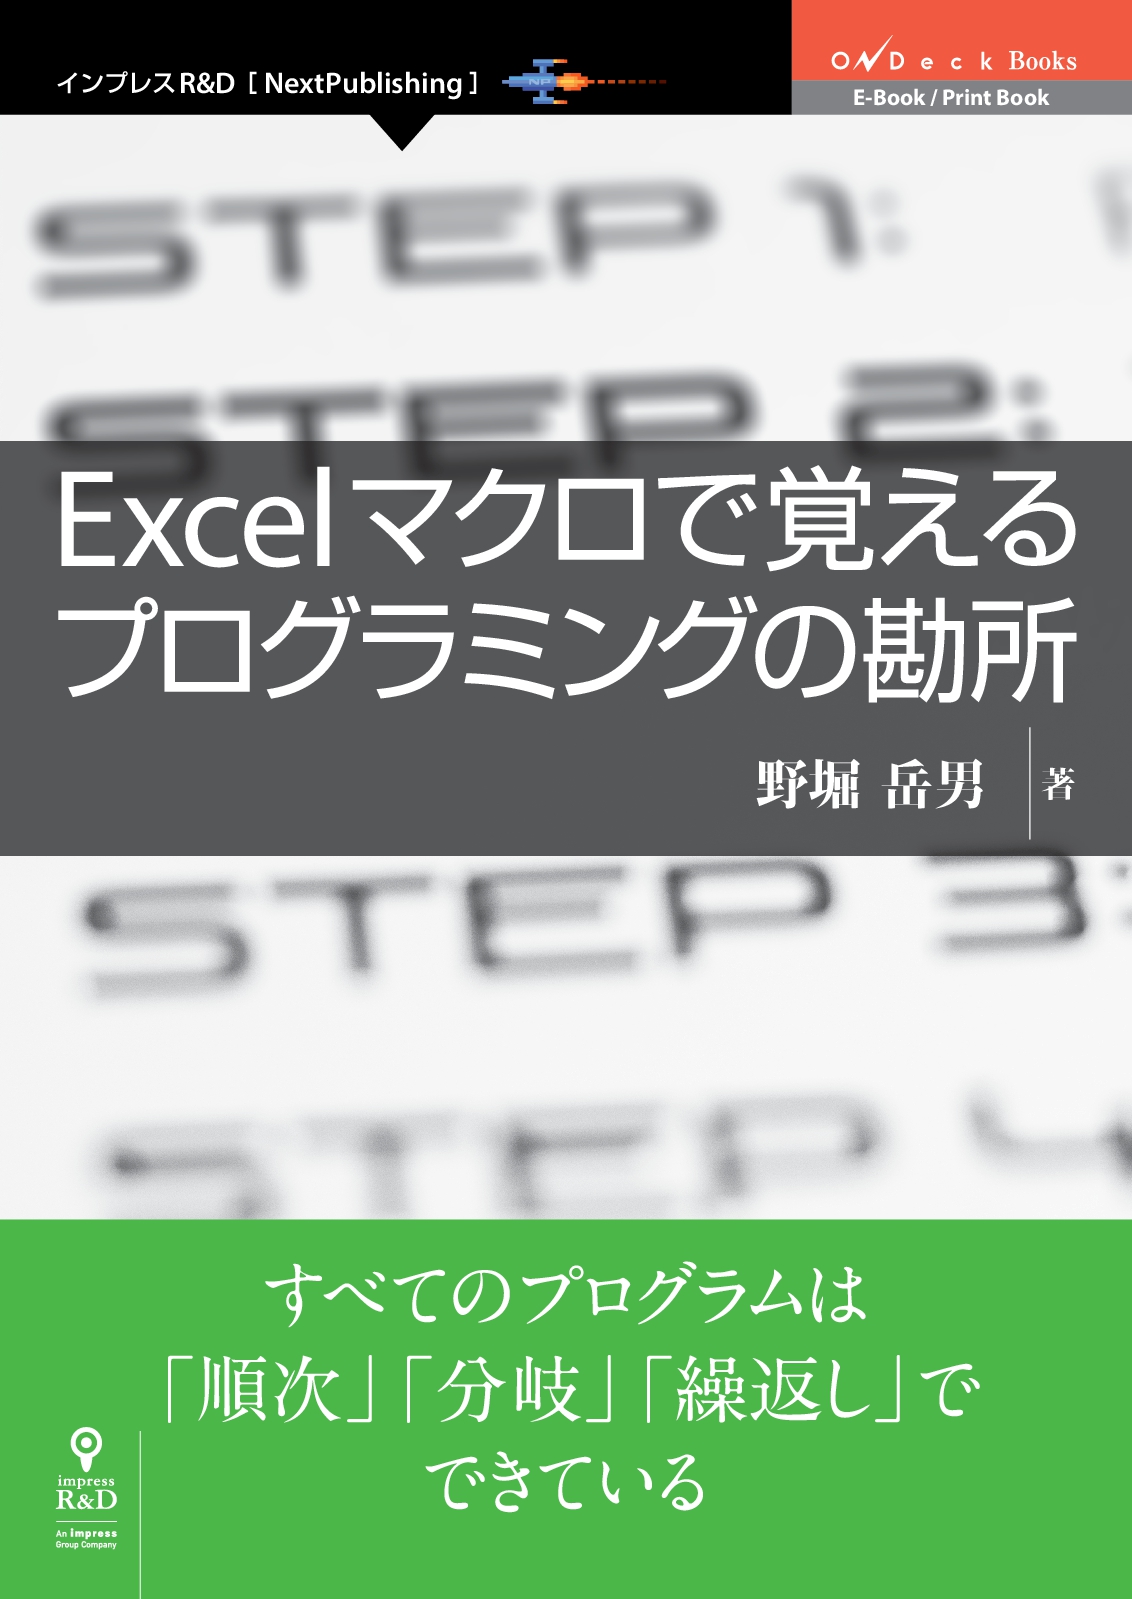 インプレスr D の 新時代 著者発掘プロジェクト 厳選書籍 Excelマクロで覚えるプログラミングの勘所 発行 すべてのプログラムは 順次 分岐 繰返し でできている 株式会社 インプレスホールディングスのプレスリリース